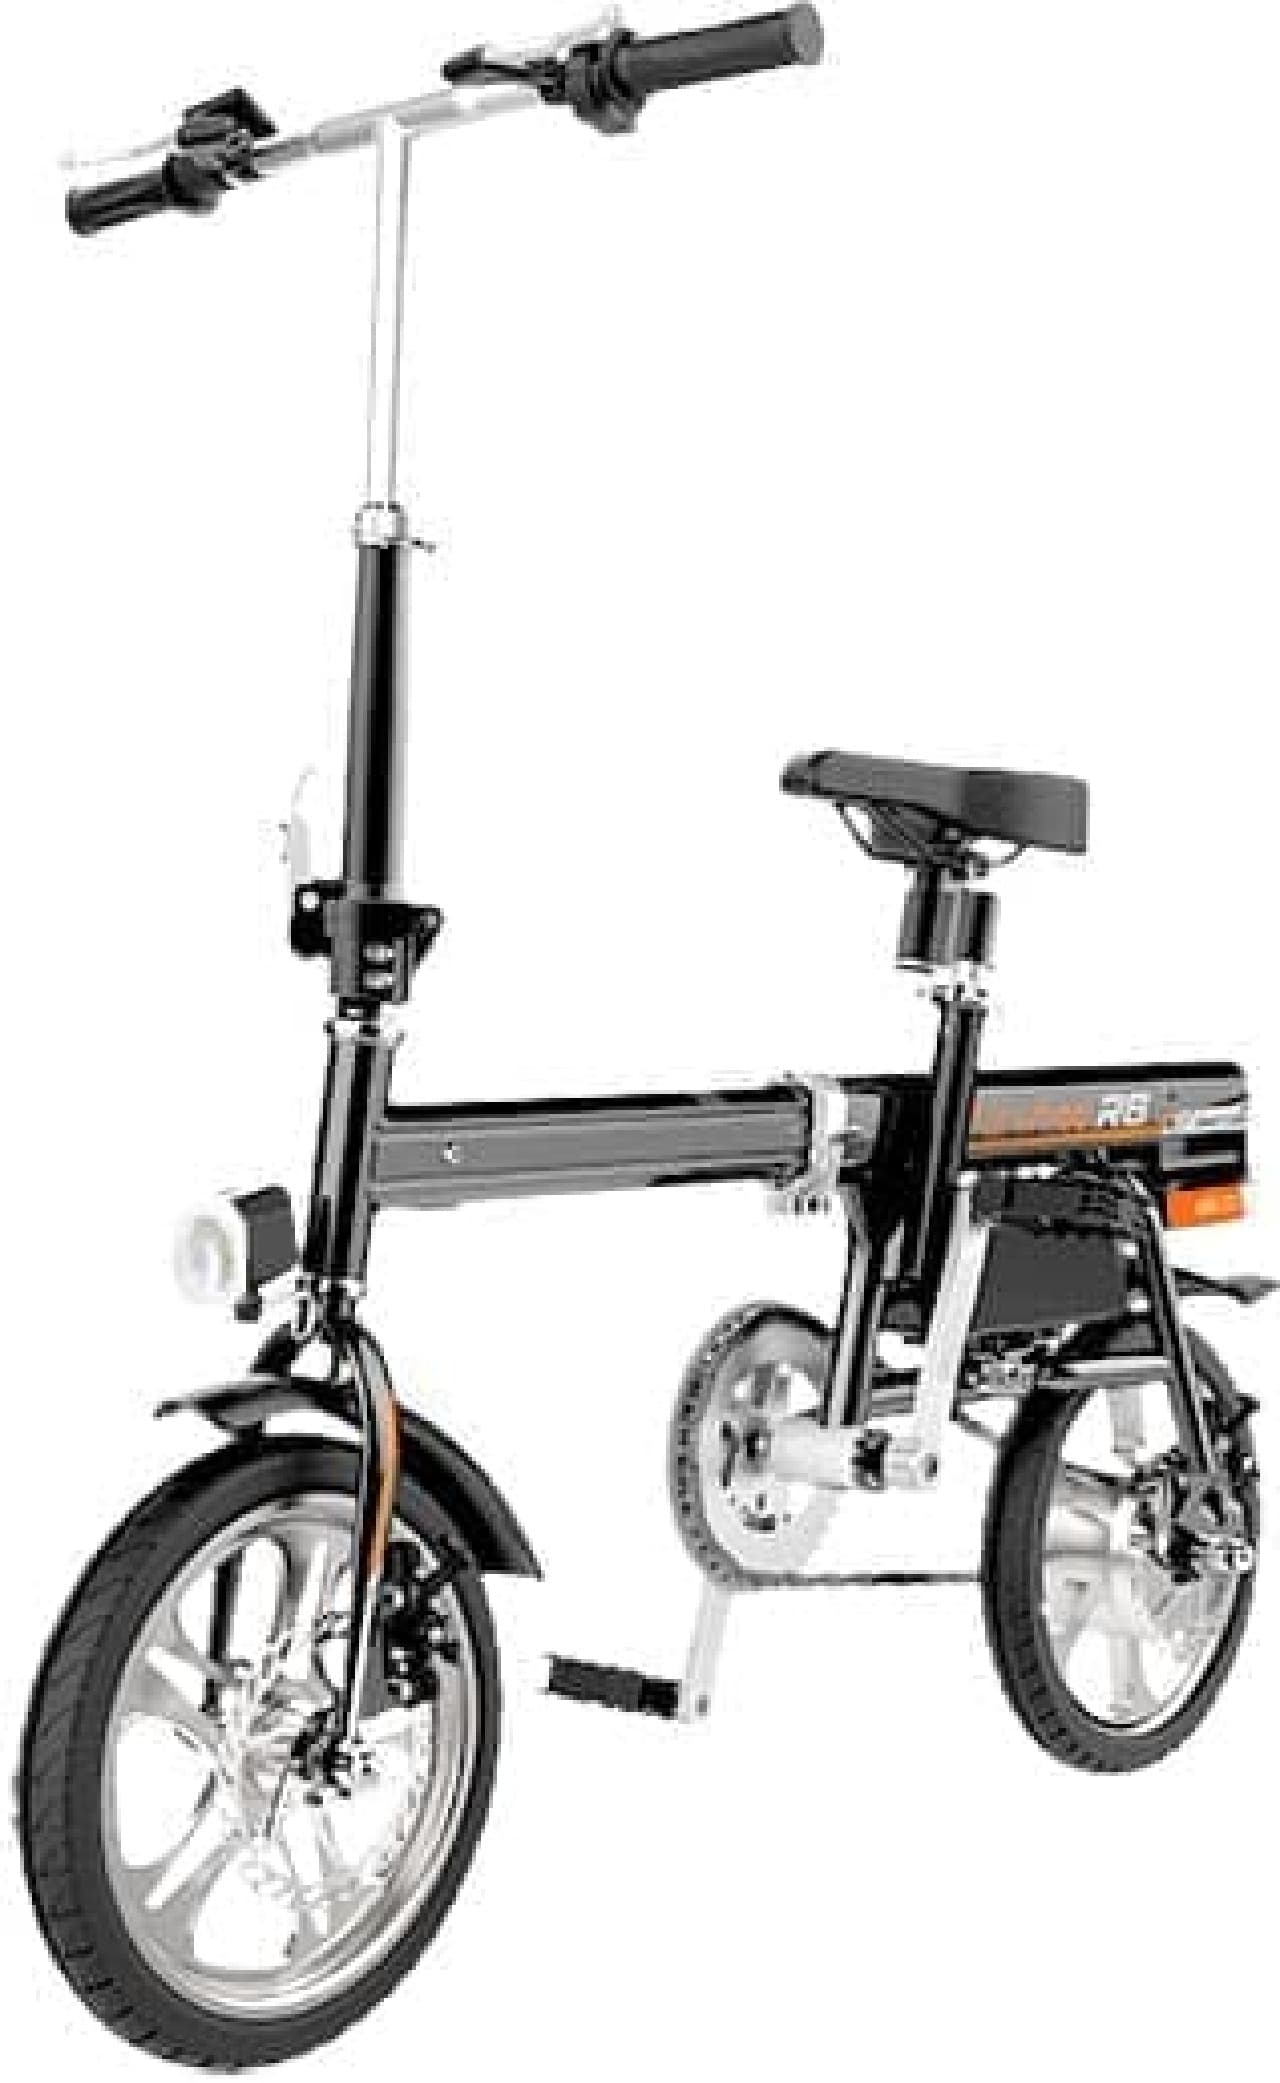 電動バイク「Airwheel R6」－電動折り畳み機能付き